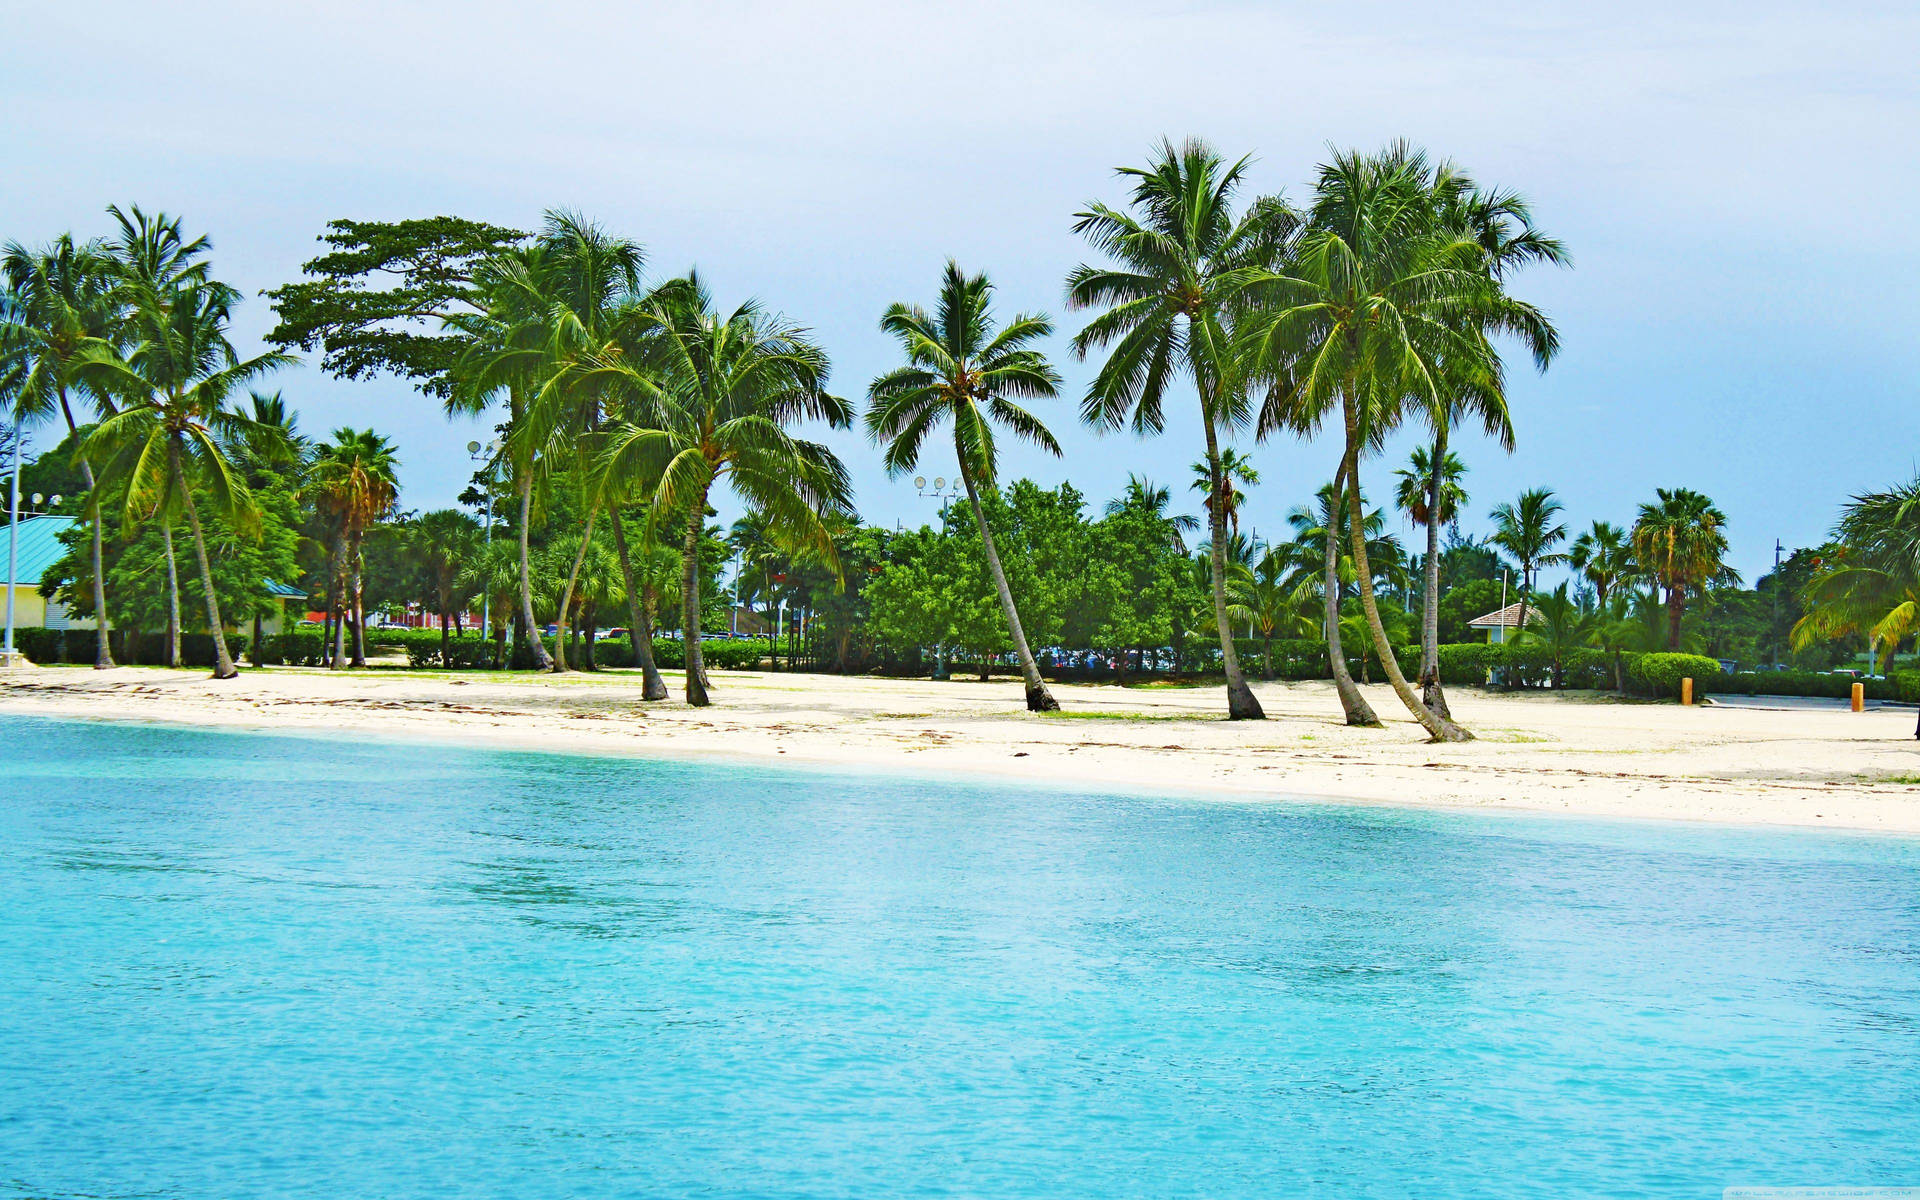 Bahamas Shore And Coconut Trees